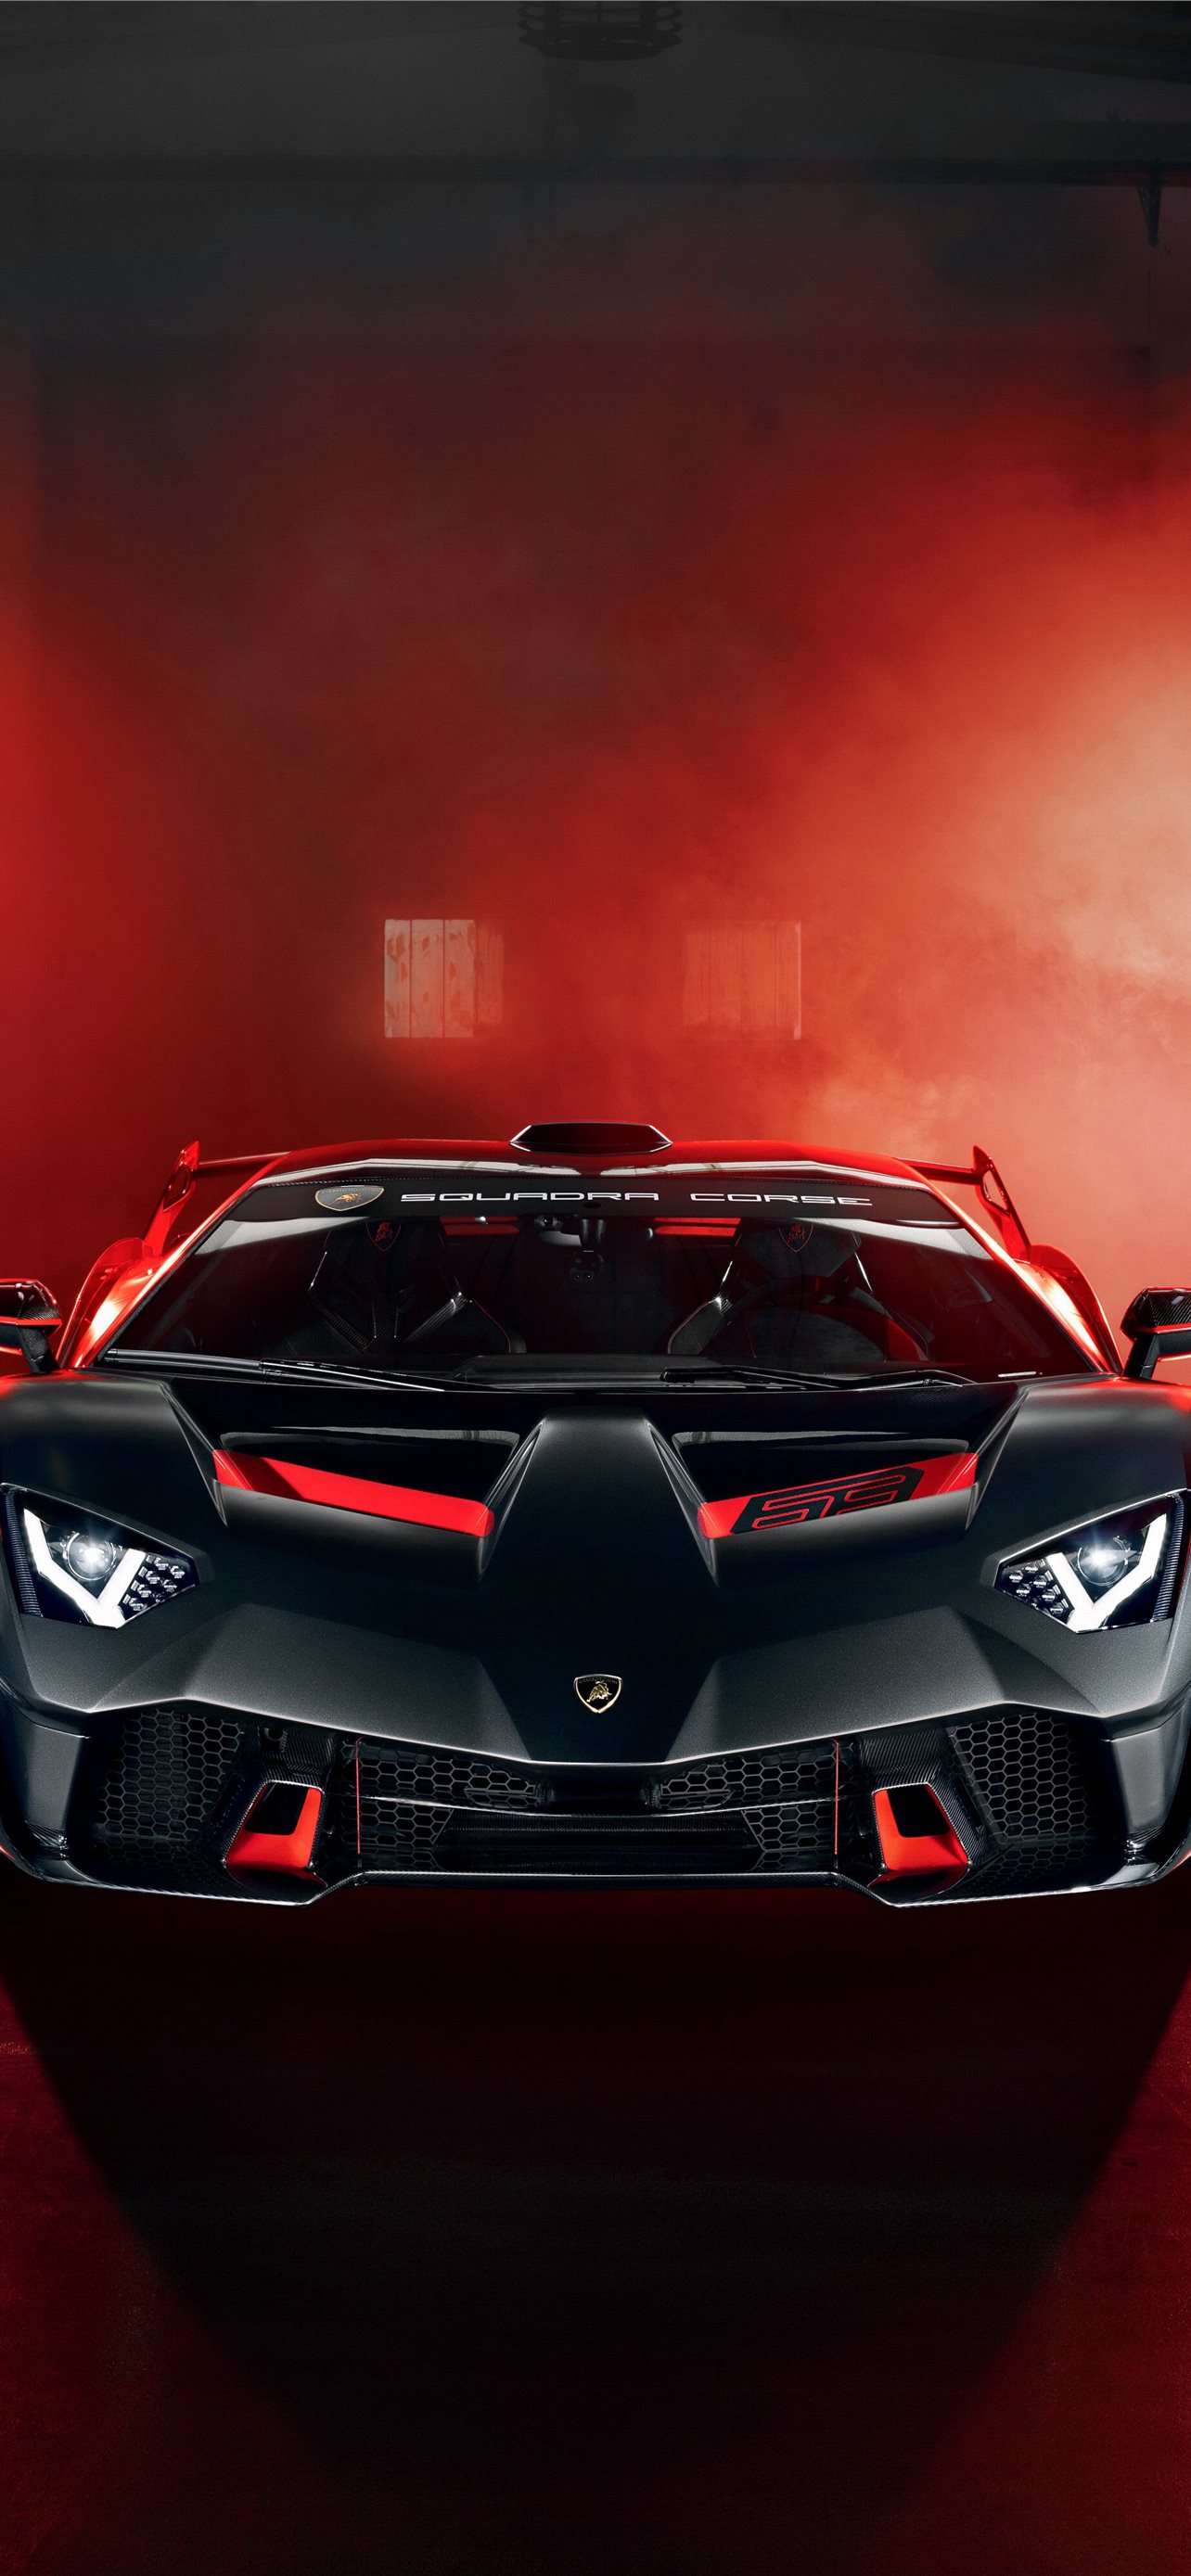 Hình nền Lamborghini: Tổng hợp những hình nền Lamborghini đẹp nhất trên toàn thế giới, chất lượng siêu nét và sắc nét. Bạn sẽ có được bức tranh nền tuyệt đẹp, giúp cho màn hình điện thoại của bạn trở nên thu hút và đẳng cấp hơn bao giờ hết.